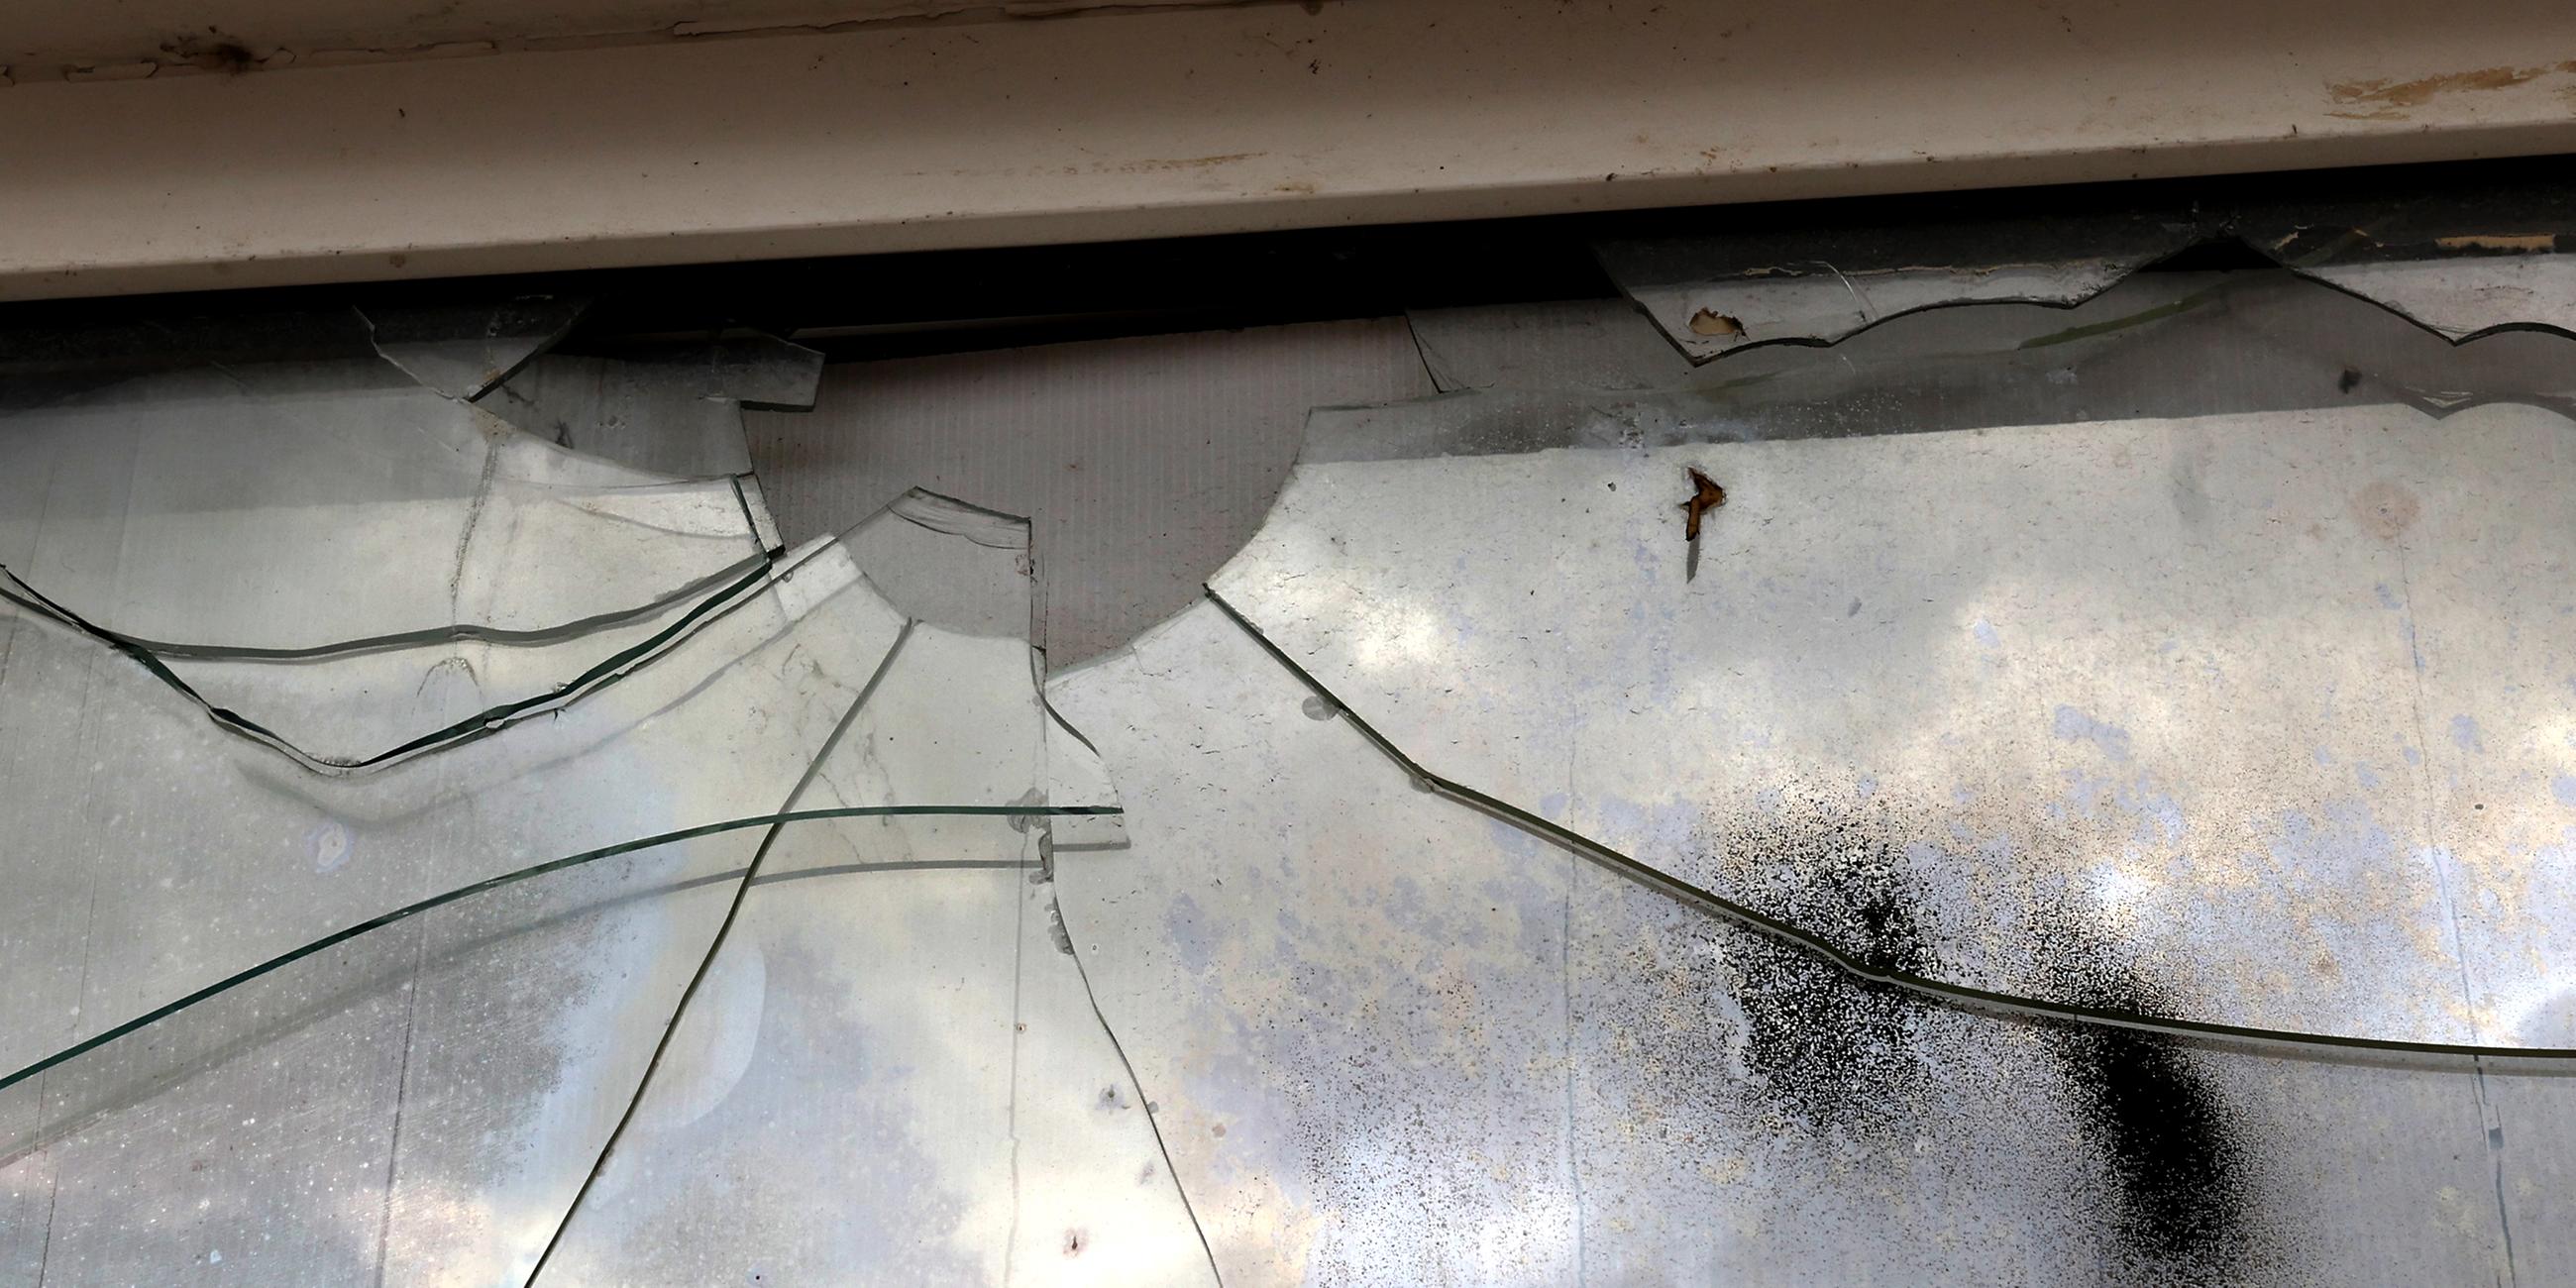 An einer beschädigten Fensterscheibe sind Einschüsse und Risse zu sehen